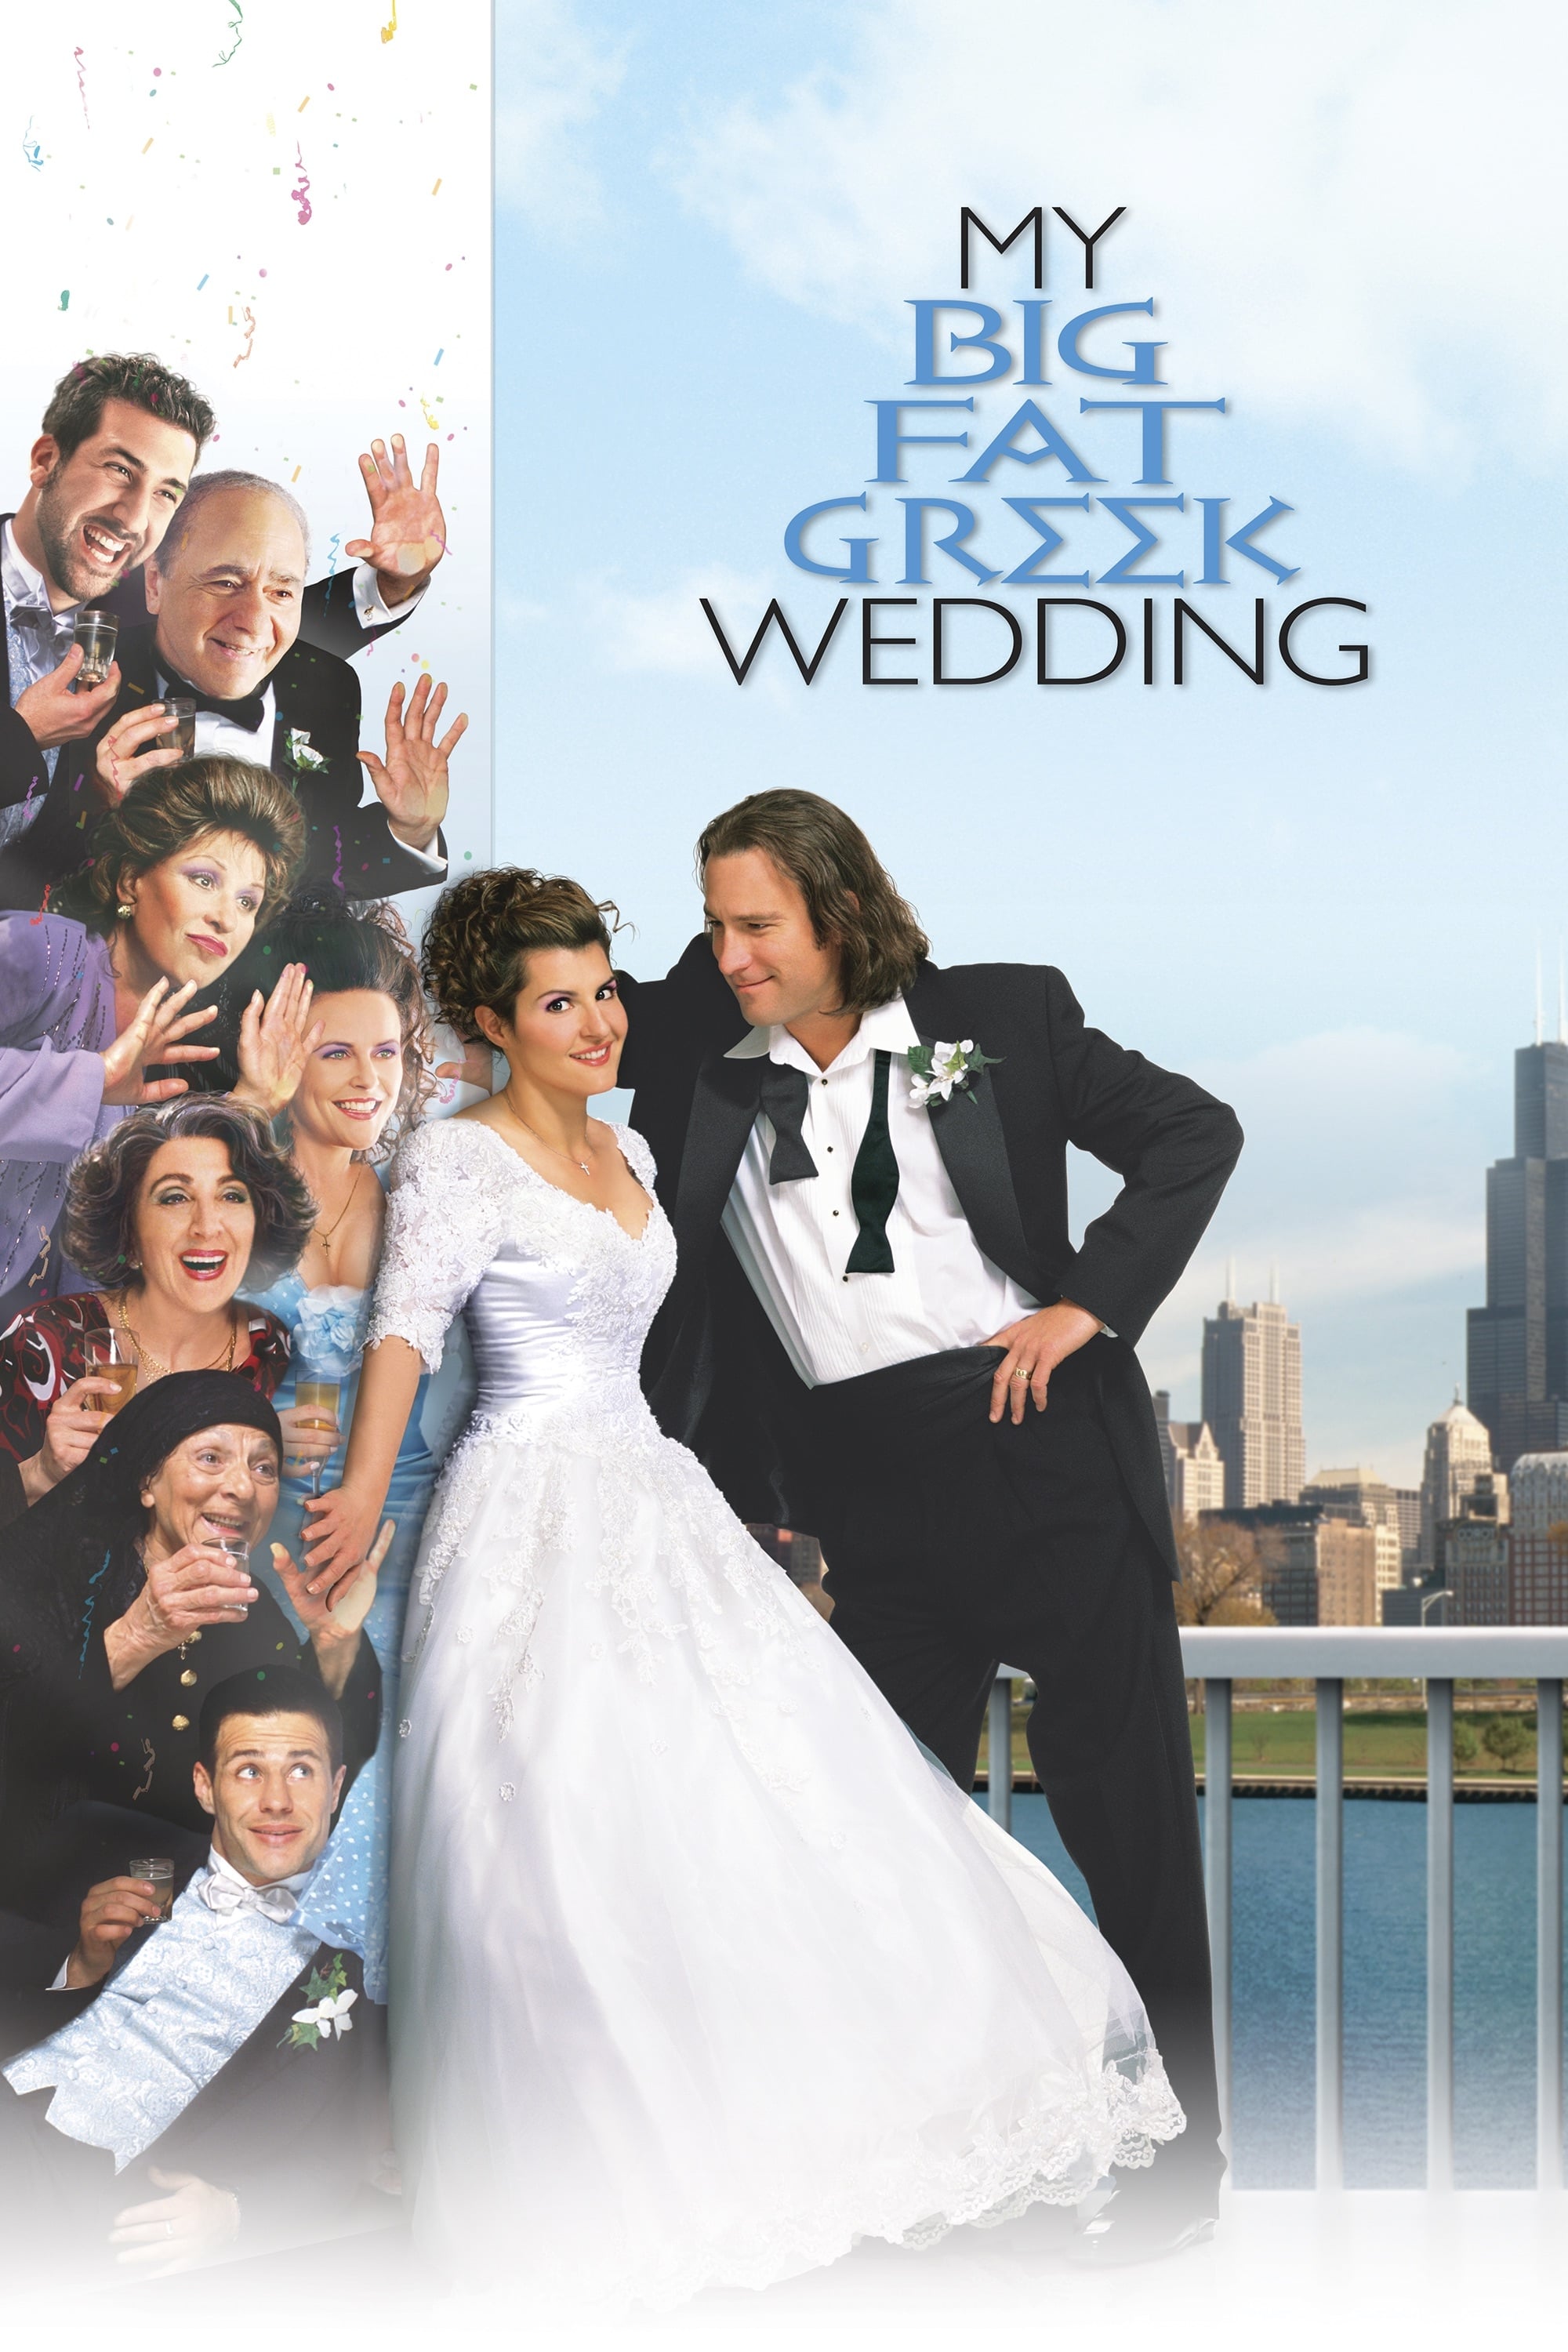 Casamento Grego (2002) Filme. Onde Assistir Streaming